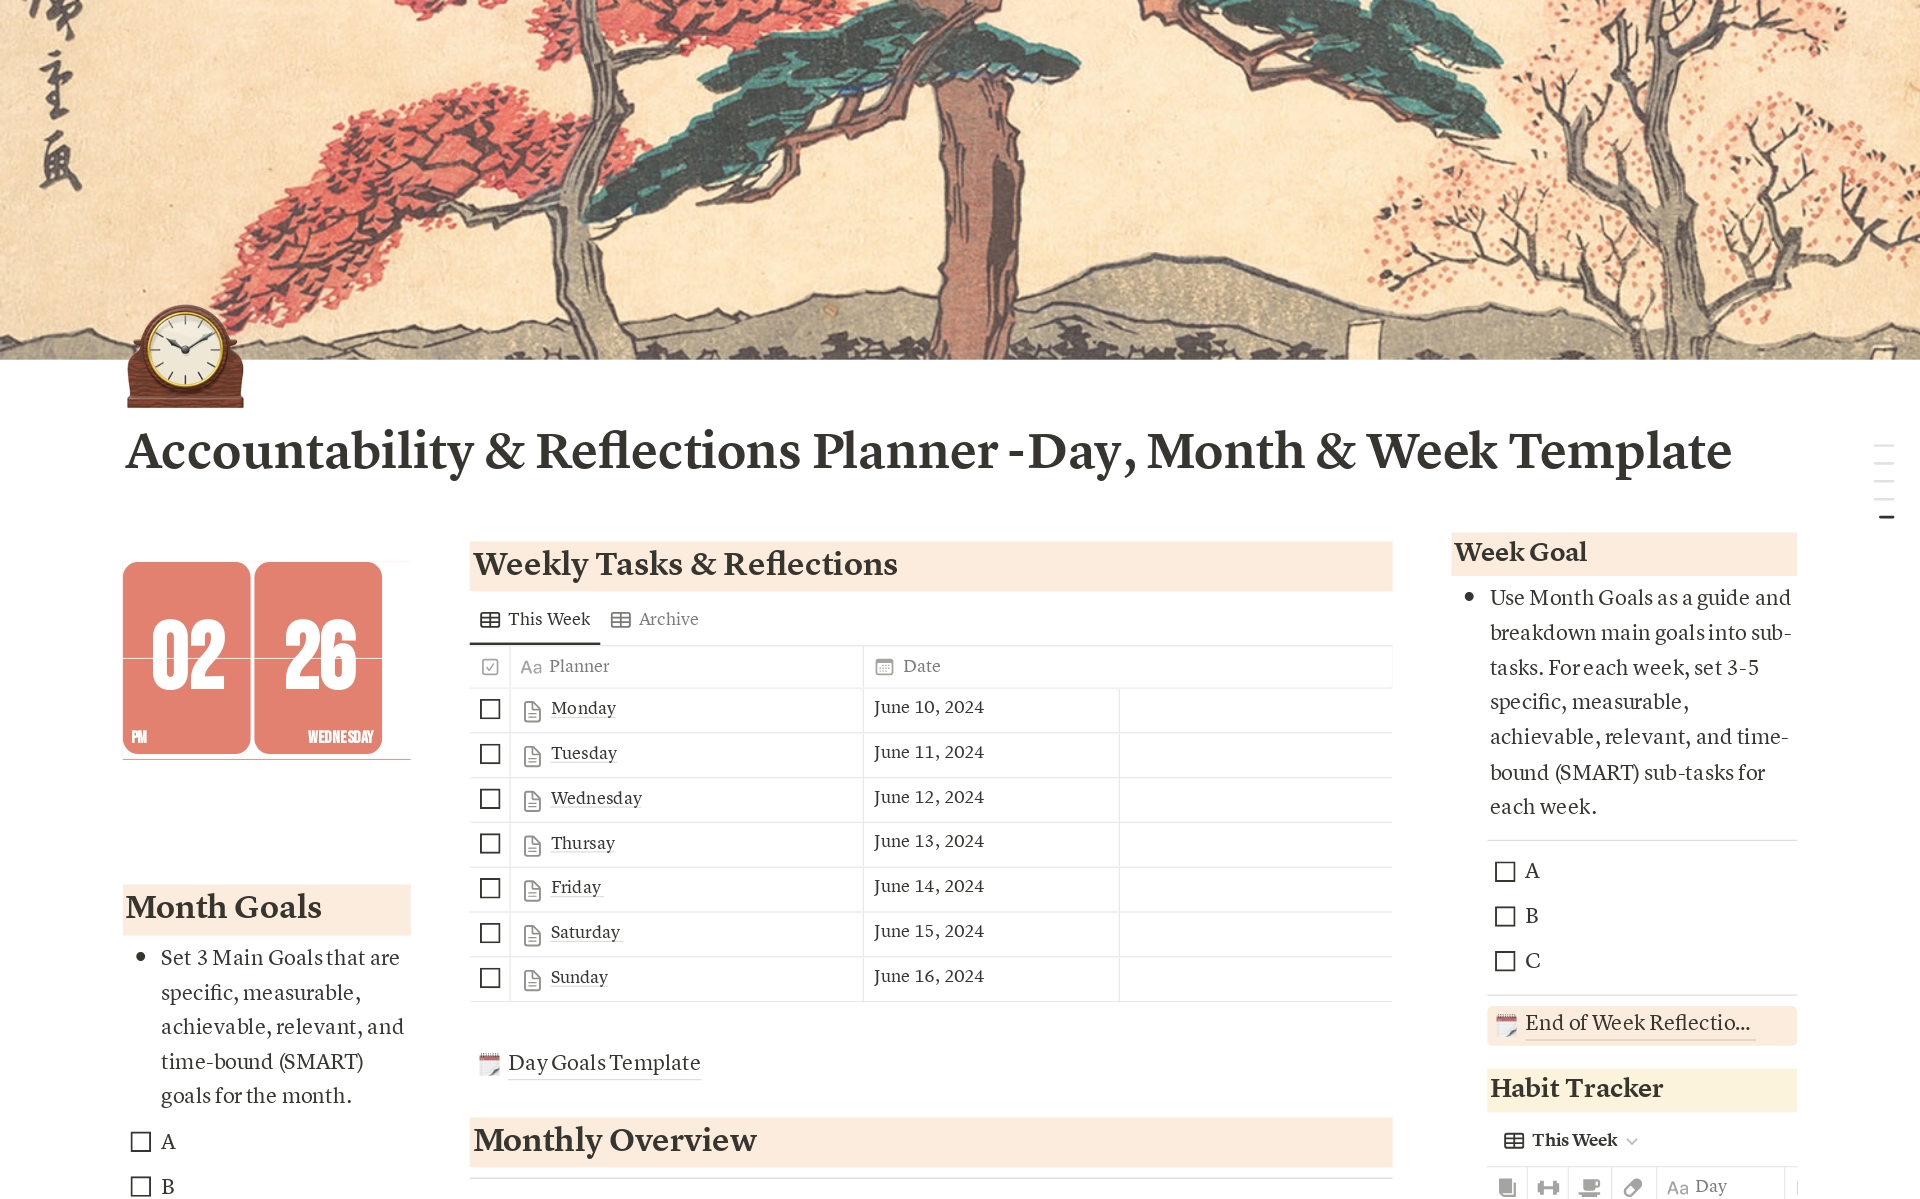 Uma prévia do modelo para Ultimate Accountability Planner -Day, Month & Week